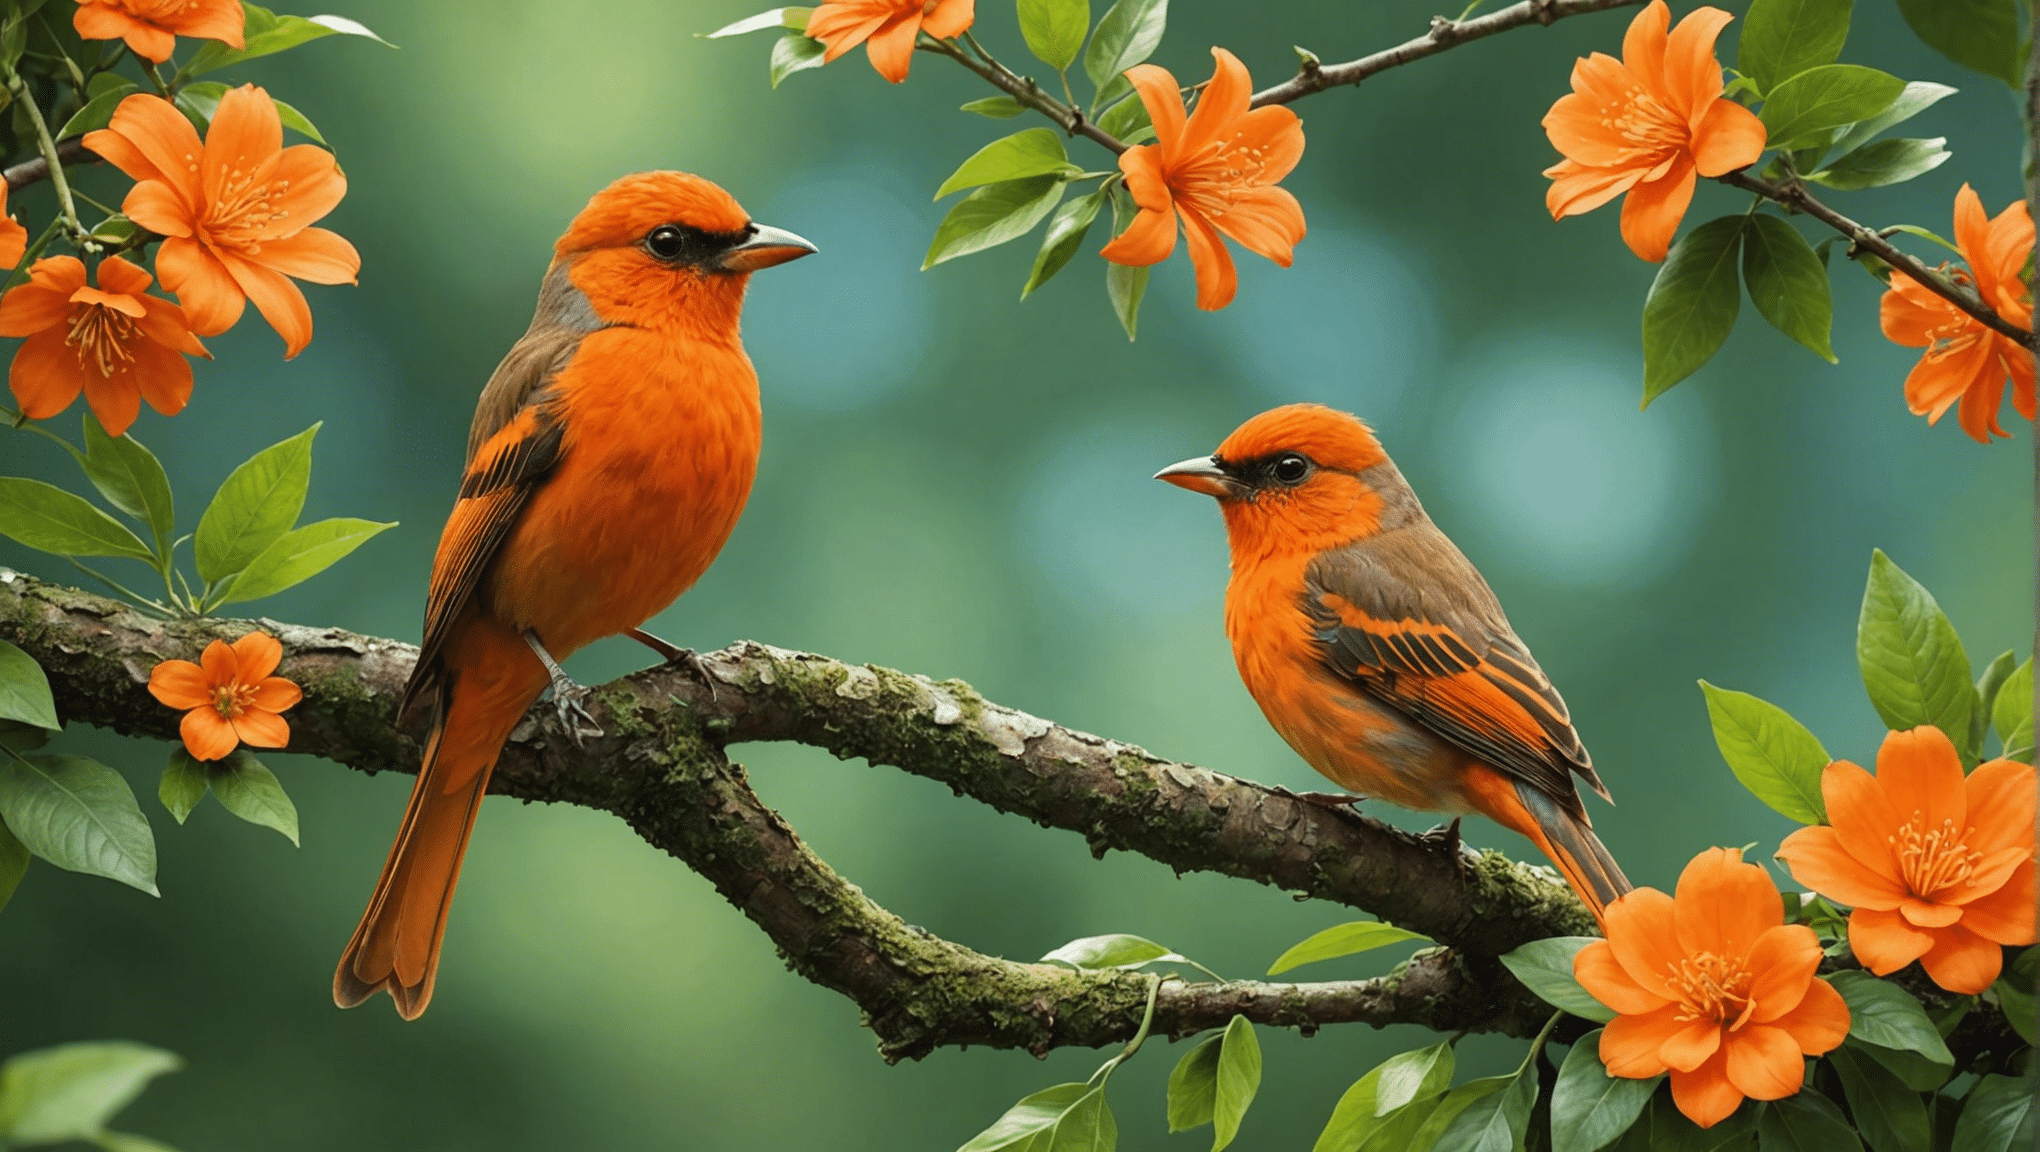 découvrez la vérité sur les oiseaux orange : sont-ils réels ou juste un mythe ? Obtenez les faits et découvrez la réalité derrière le mystère de l'oiseau orange.